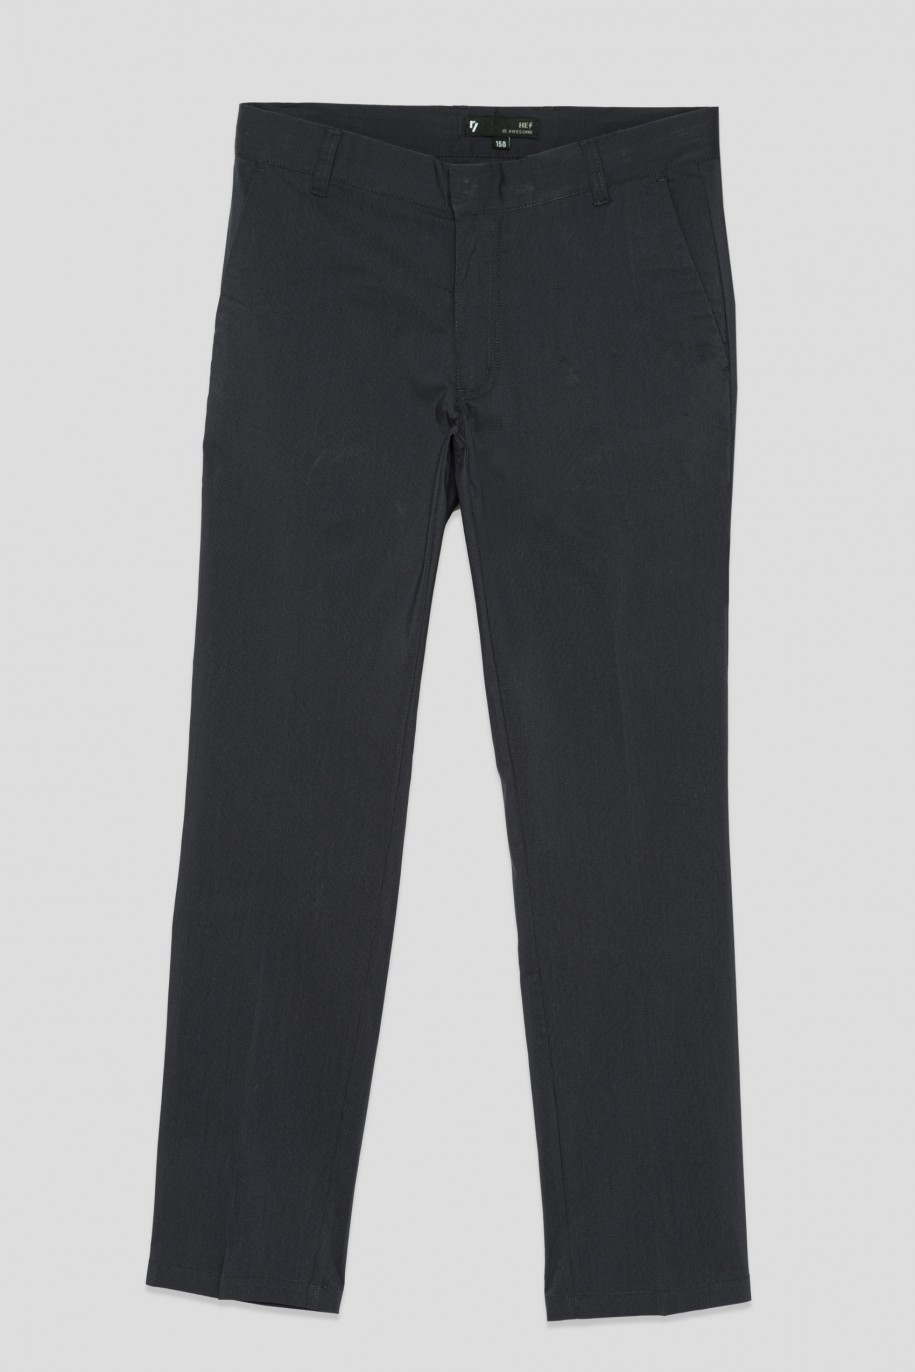 Granatowe spodnie garniturowe dla chłopaka - 33747